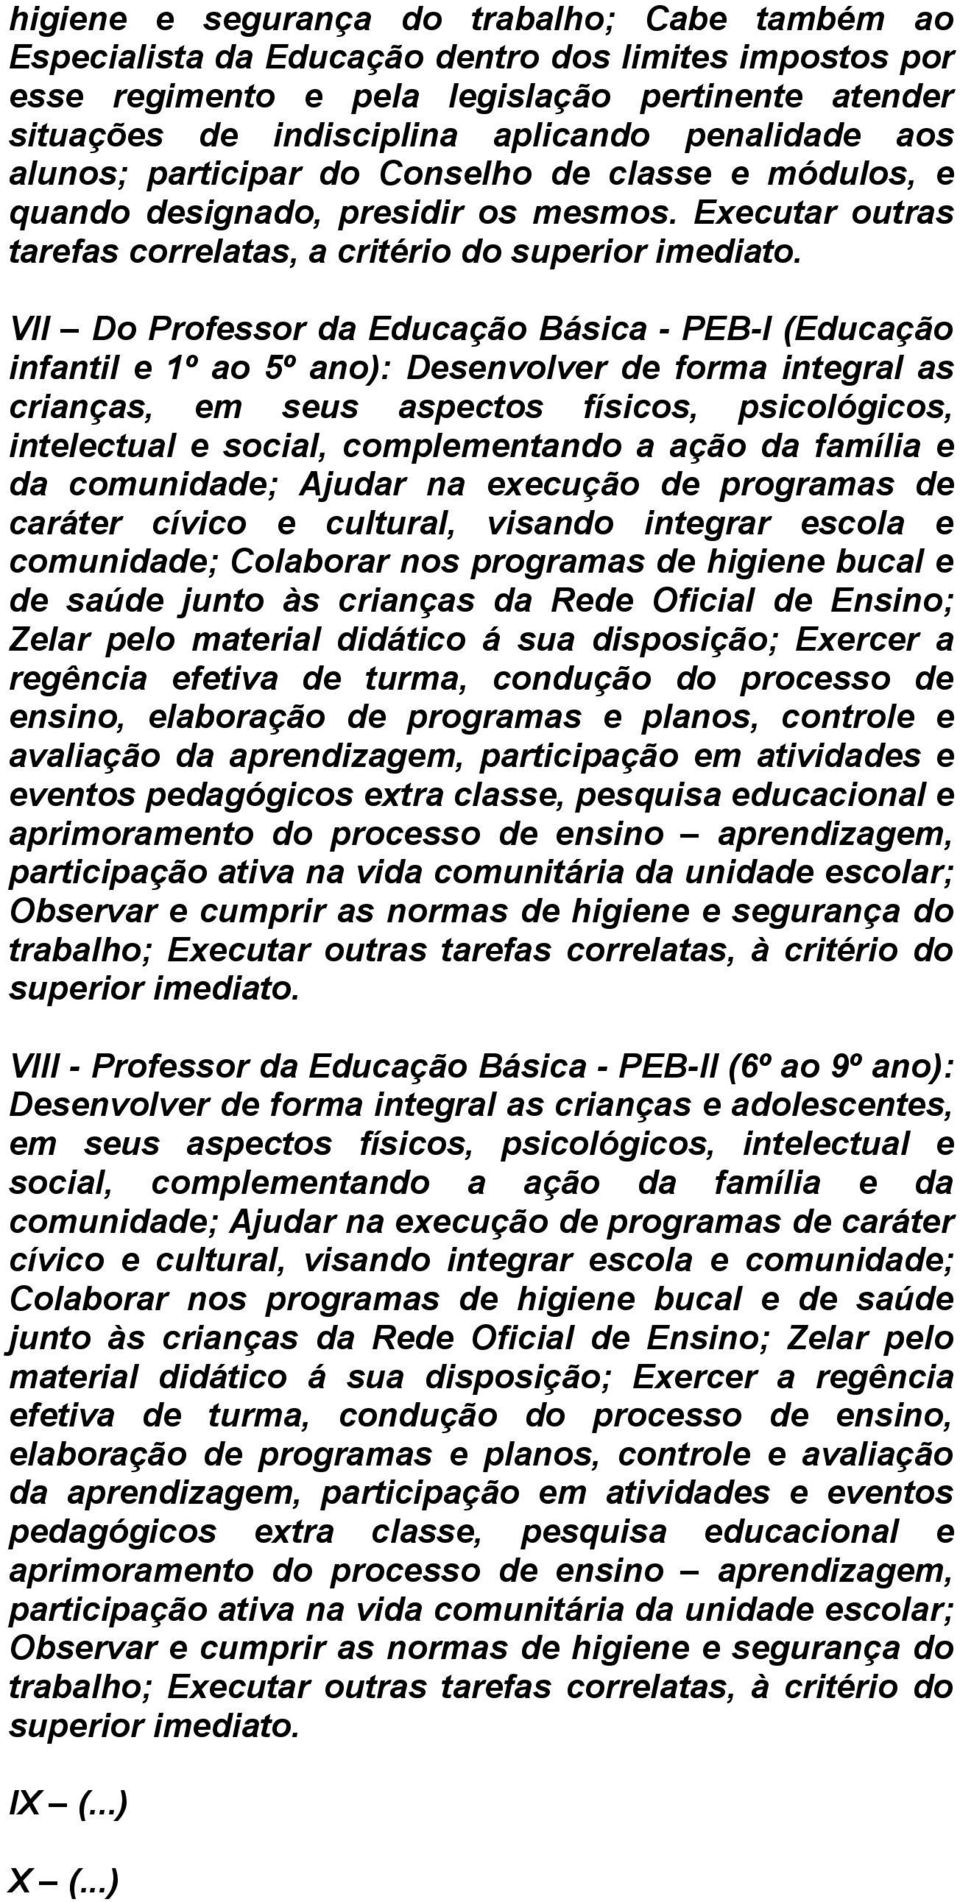 VII Do Professor da Educação Básica - PEB-I (Educação infantil e 1º ao 5º ano): Desenvolver de forma integral as crianças, em seus aspectos físicos, psicológicos, intelectual e social, complementando